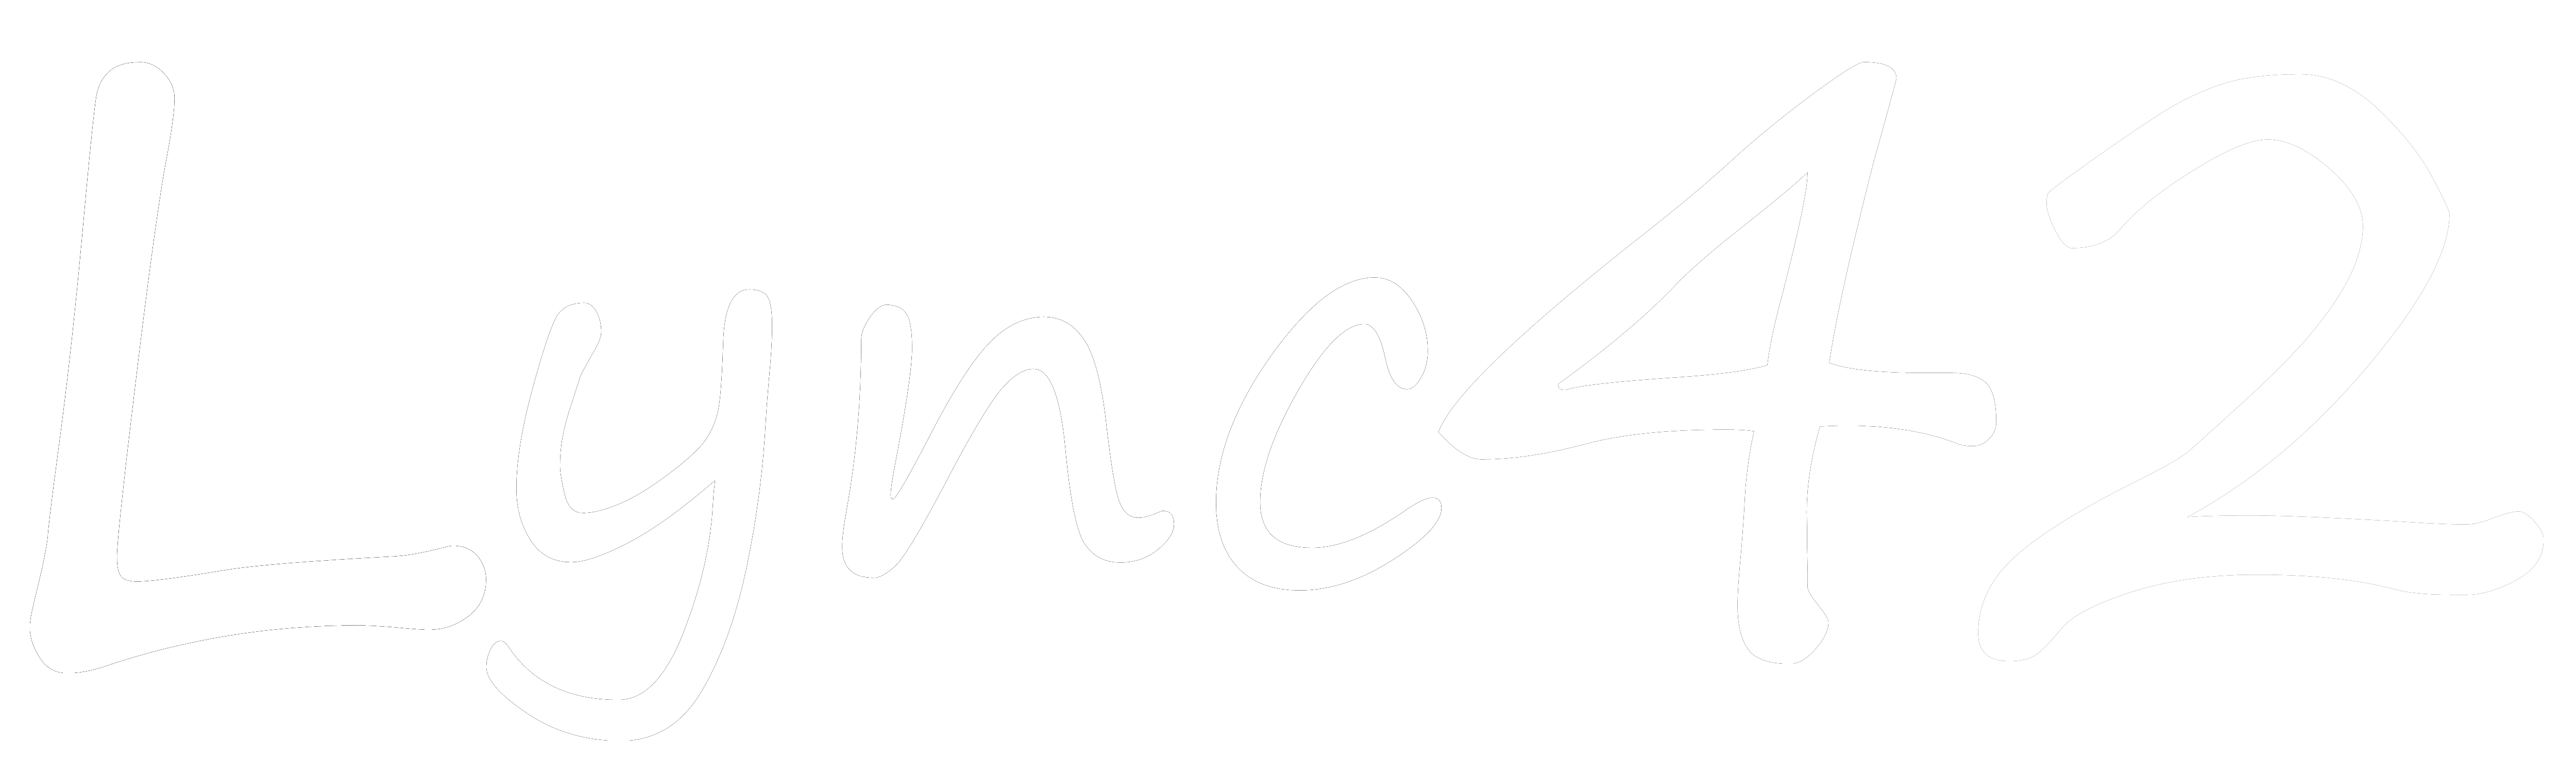 Lync42